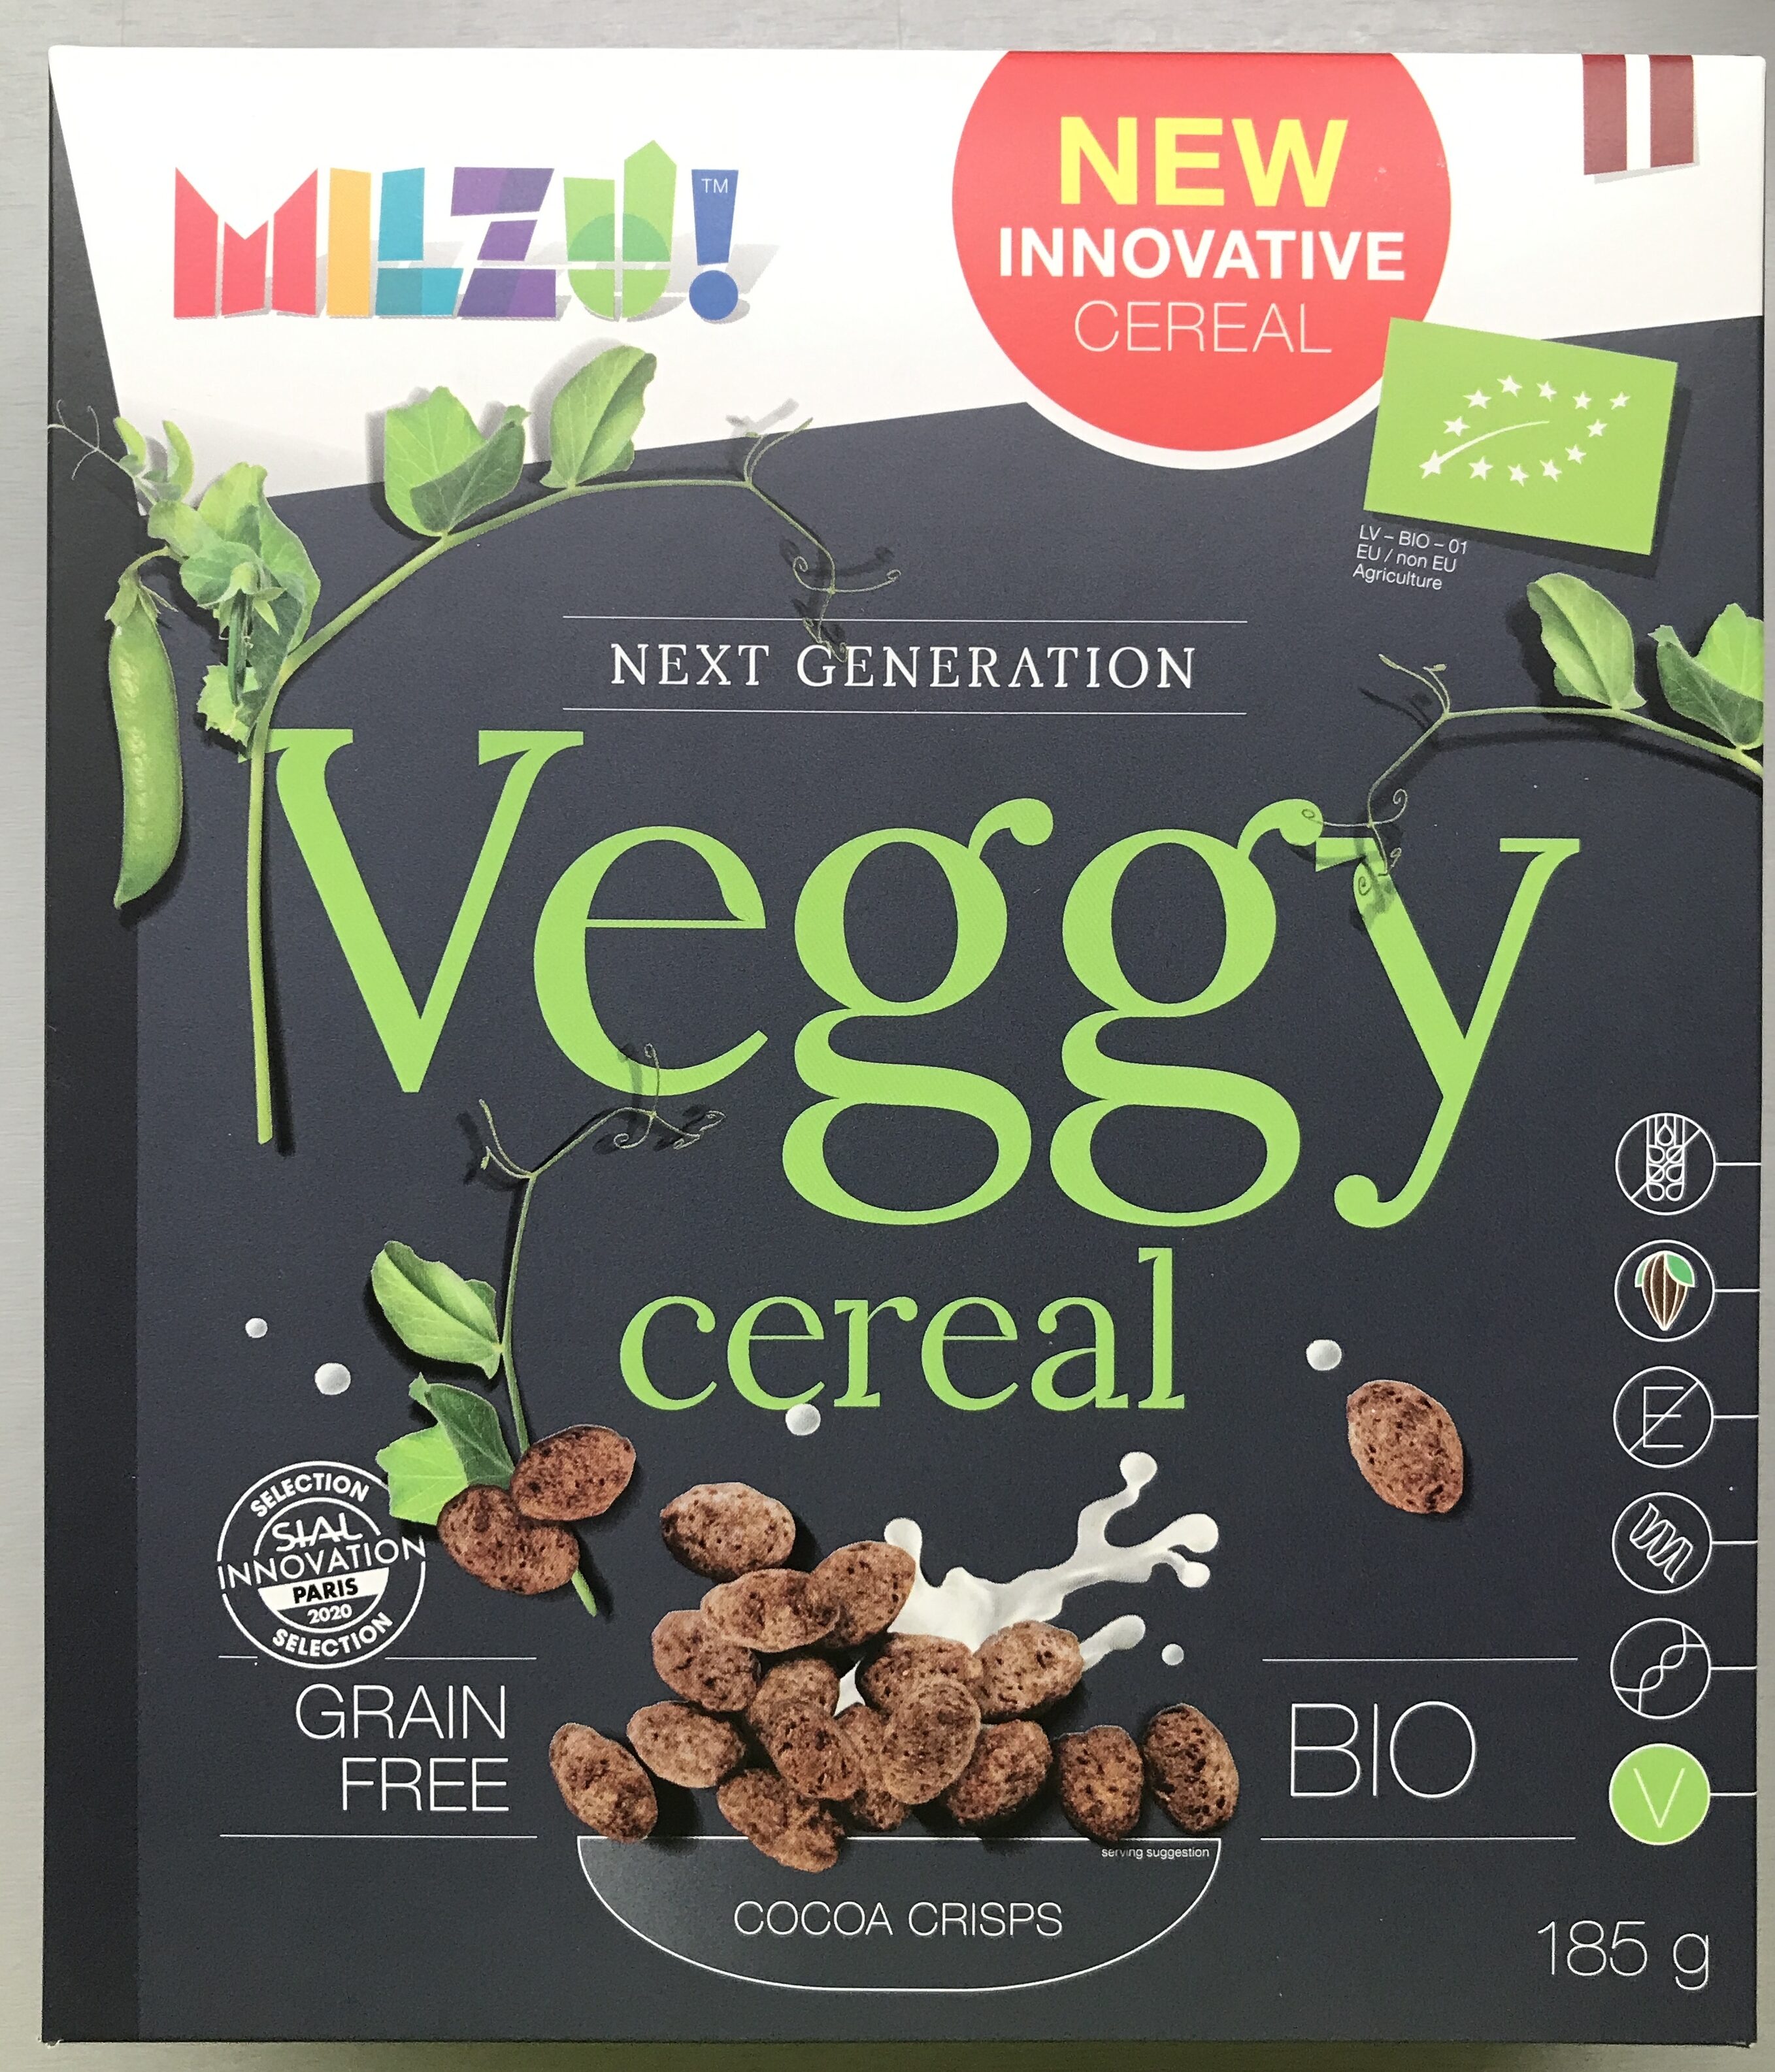 Grain free cereals - cocoa crisps - Product - en